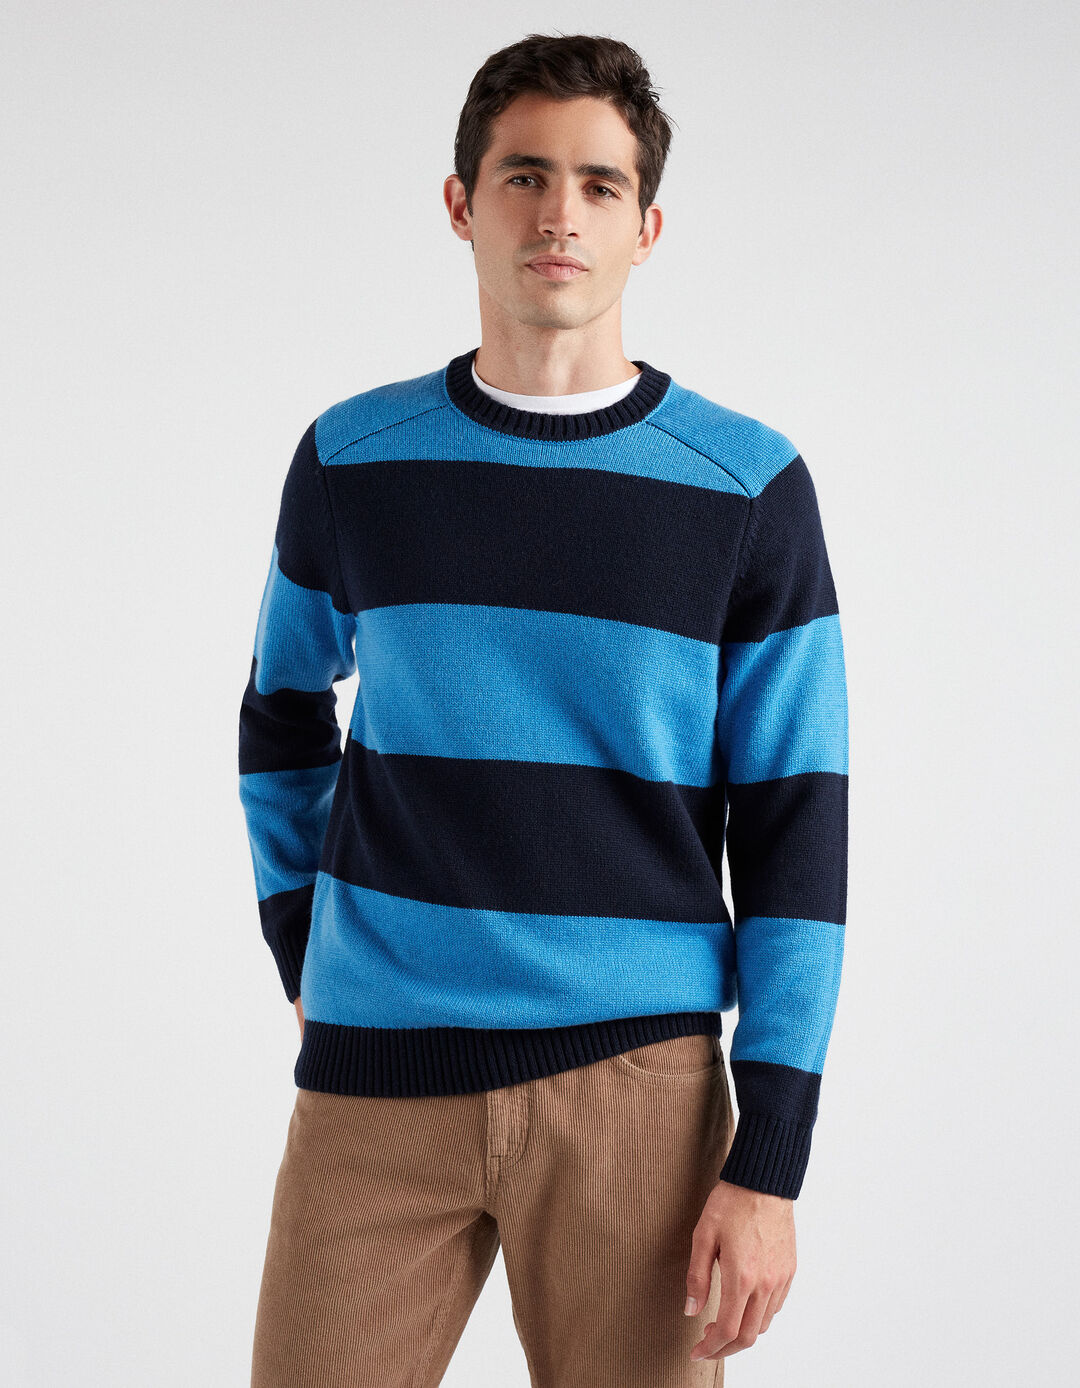 Striped Knit Sweater Wool Blend, Men, Dark Blue